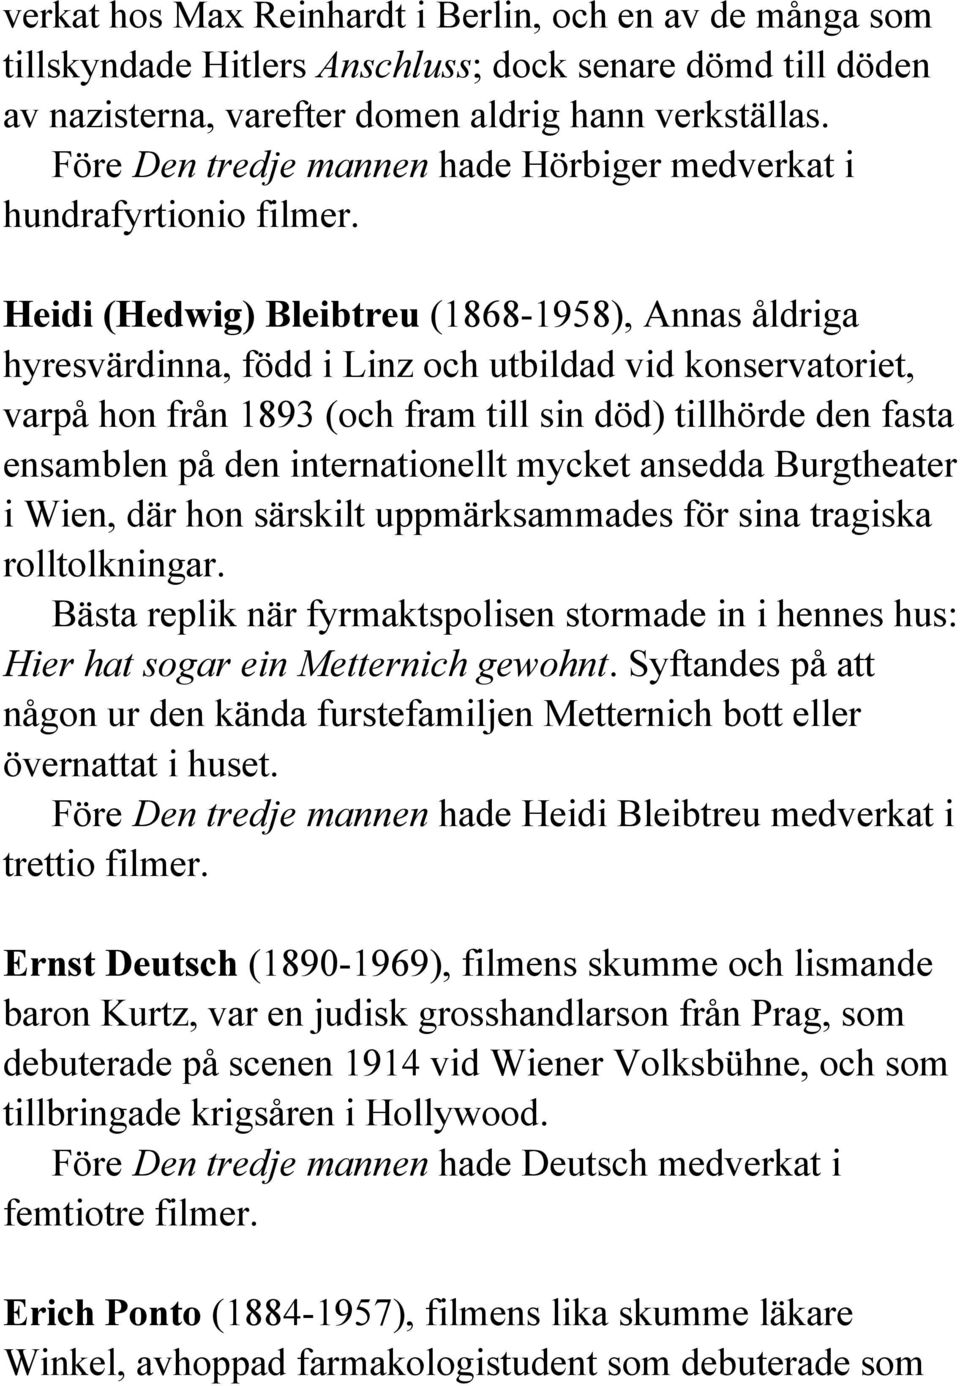 Heidi (Hedwig) Bleibtreu (1868-1958), Annas åldriga hyresvärdinna, född i Linz och utbildad vid konservatoriet, varpå hon från 1893 (och fram till sin död) tillhörde den fasta ensamblen på den